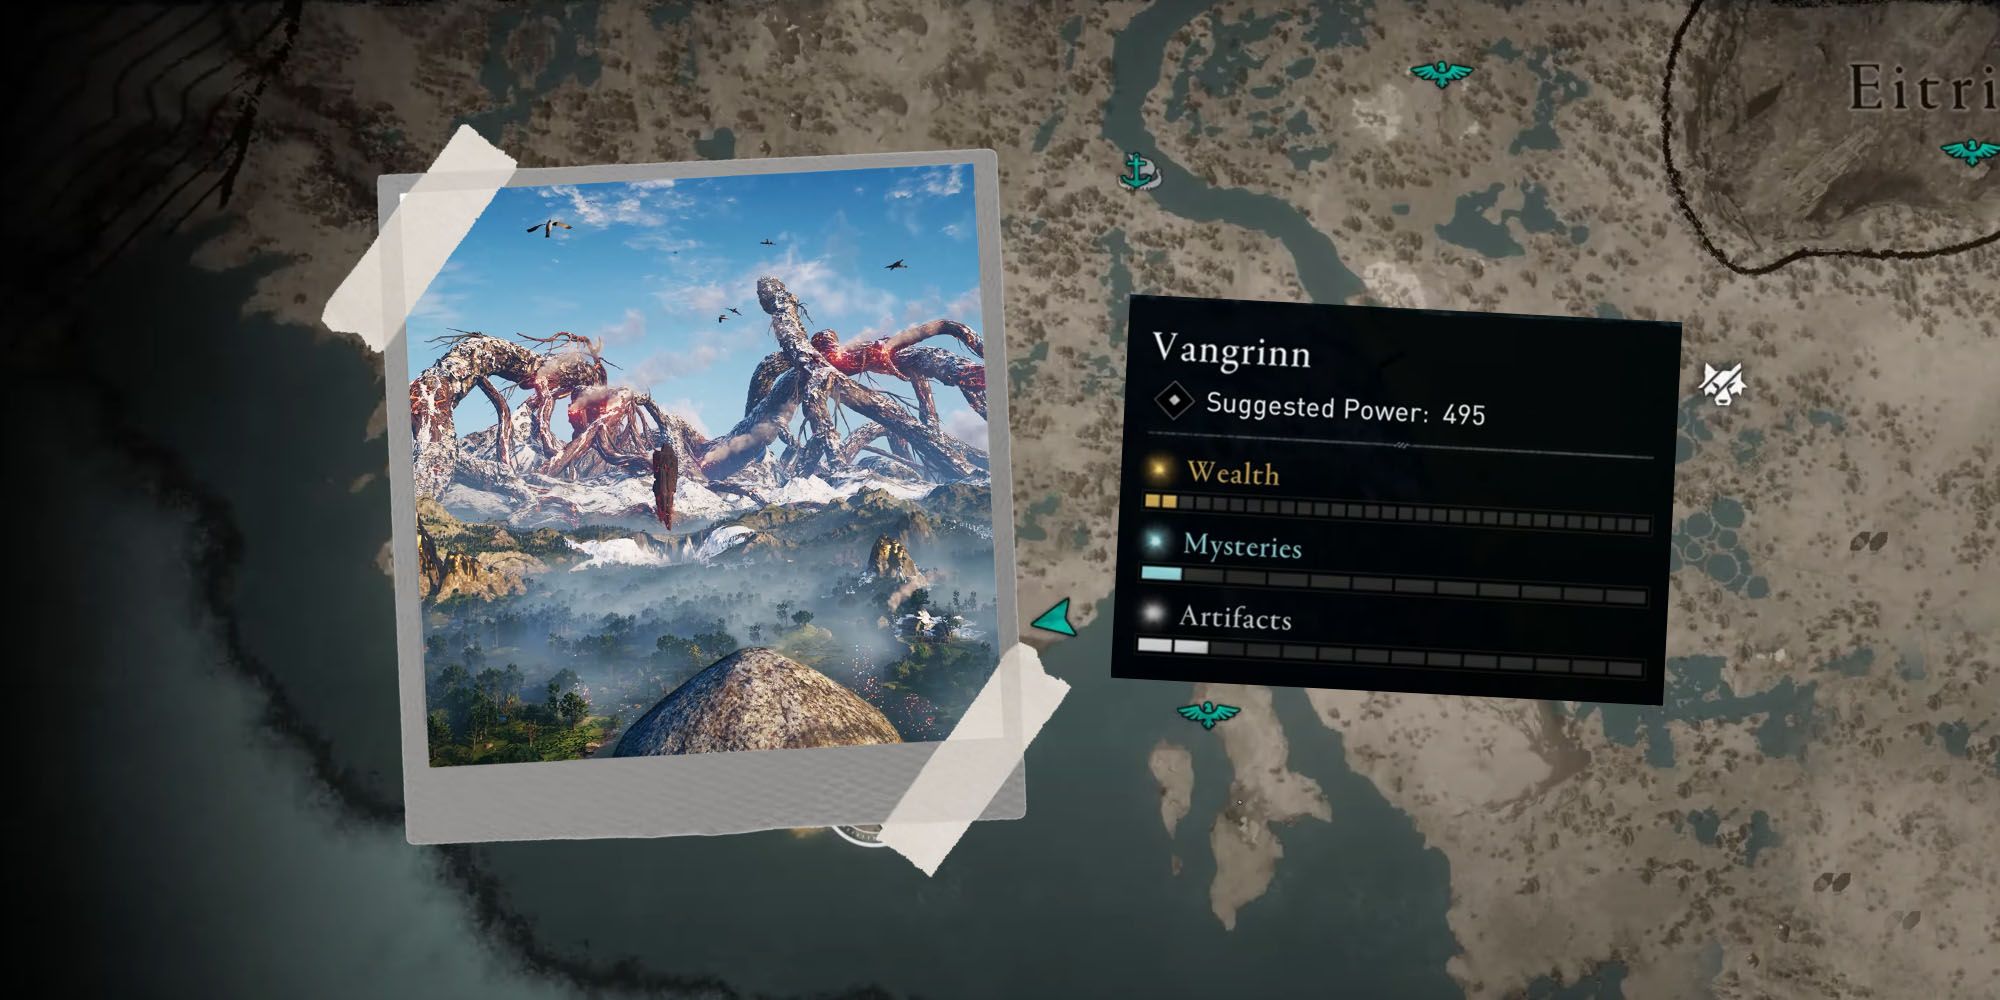 Vangrinn's map in Assassin's Creed Valhalla Dawn of Ragnarok